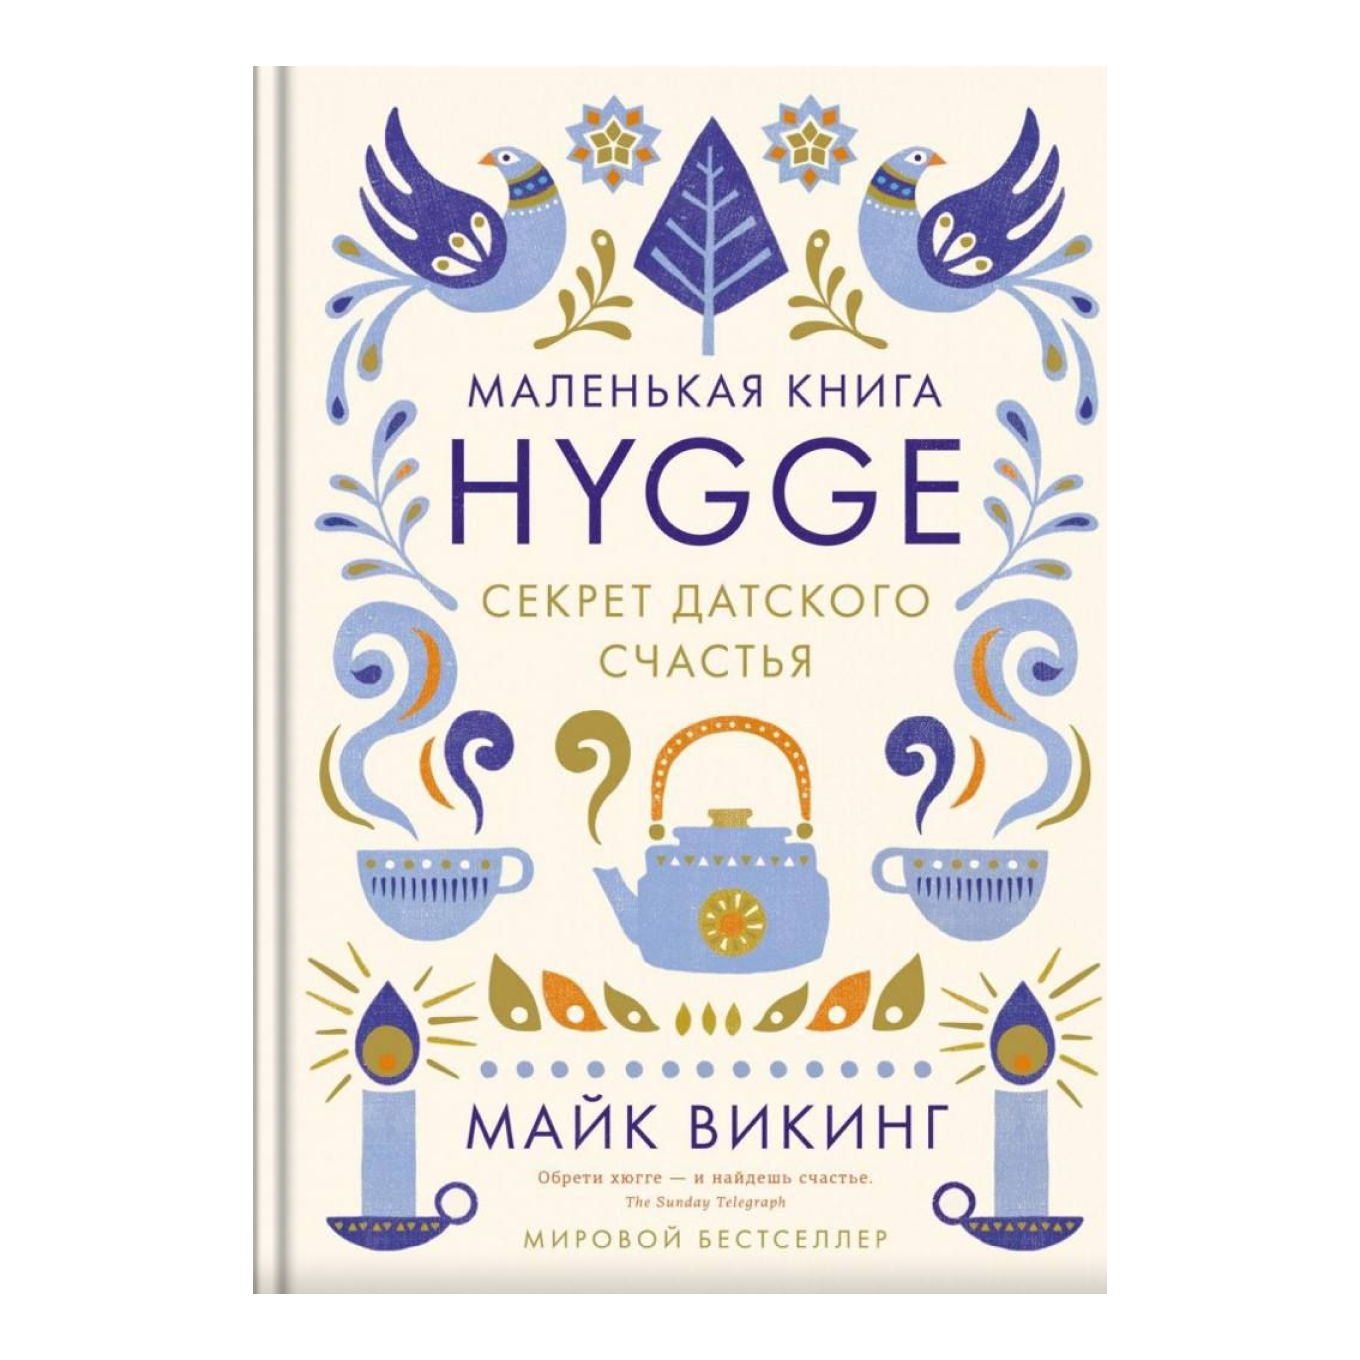 Книга «Hygge. Секрет датского счастья», Майк Викинг